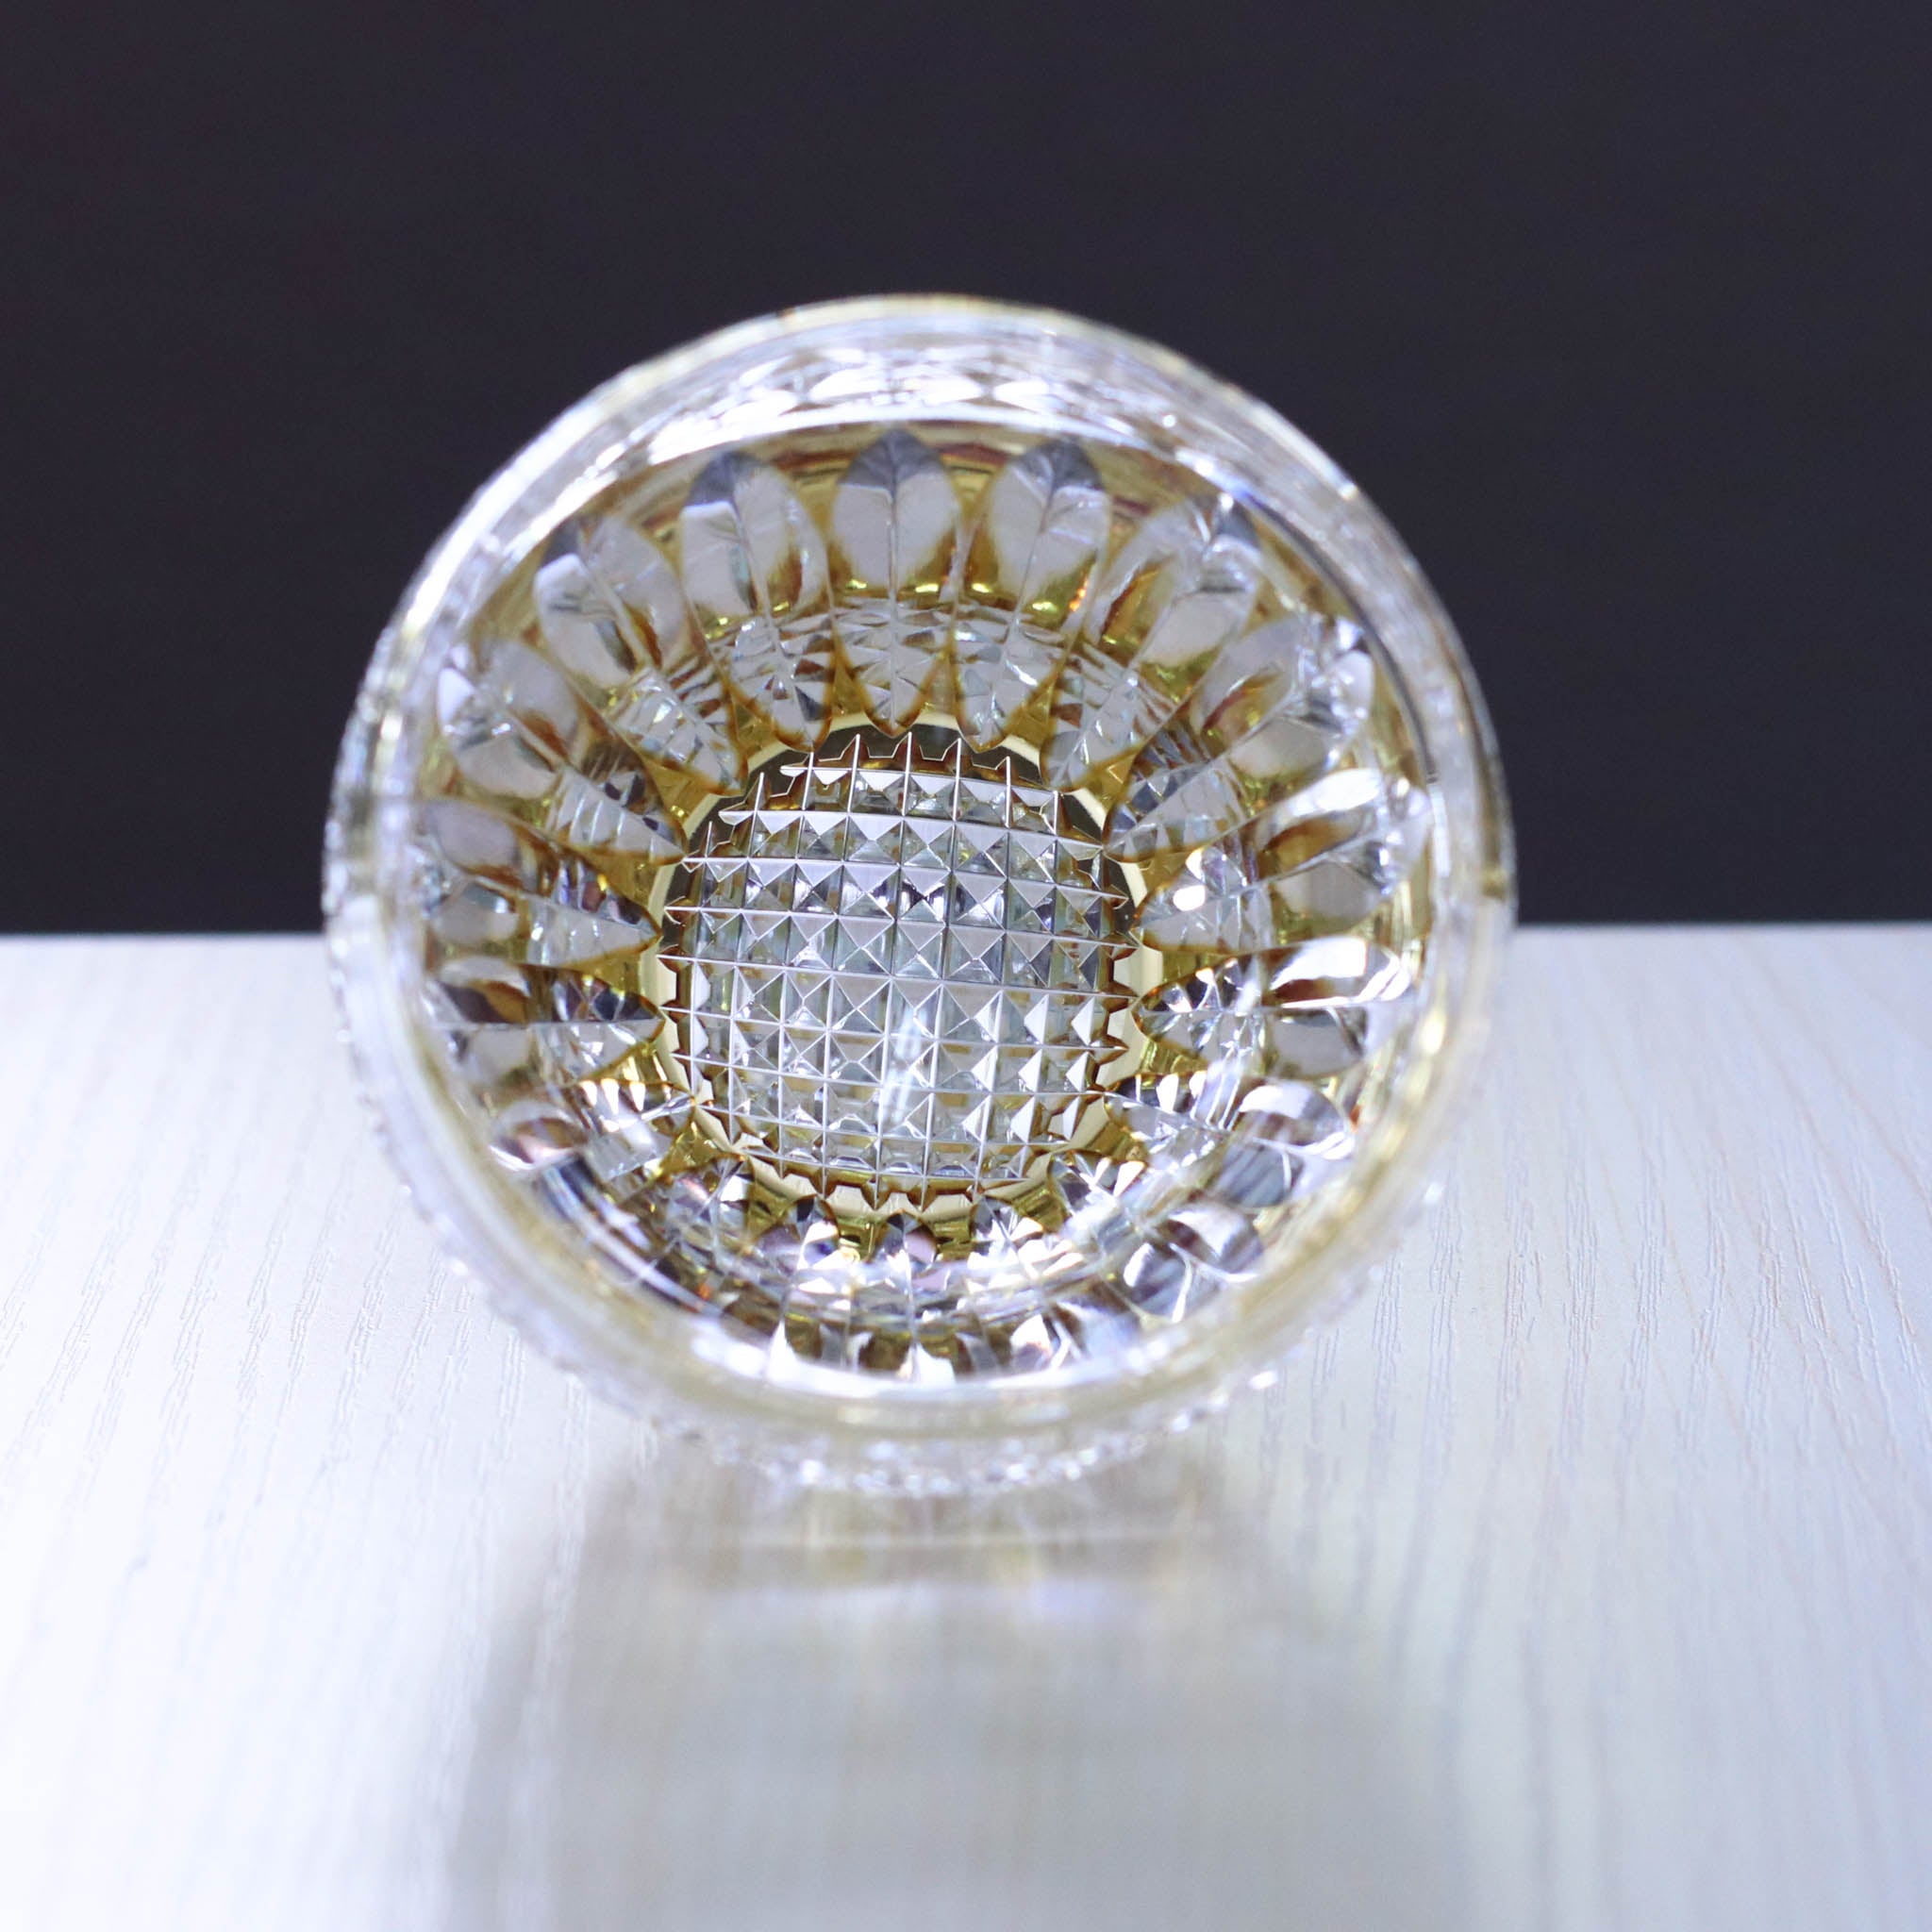 江戸切子 ロックグラス | 向日葵 | 黄 | 東亜硝子工芸